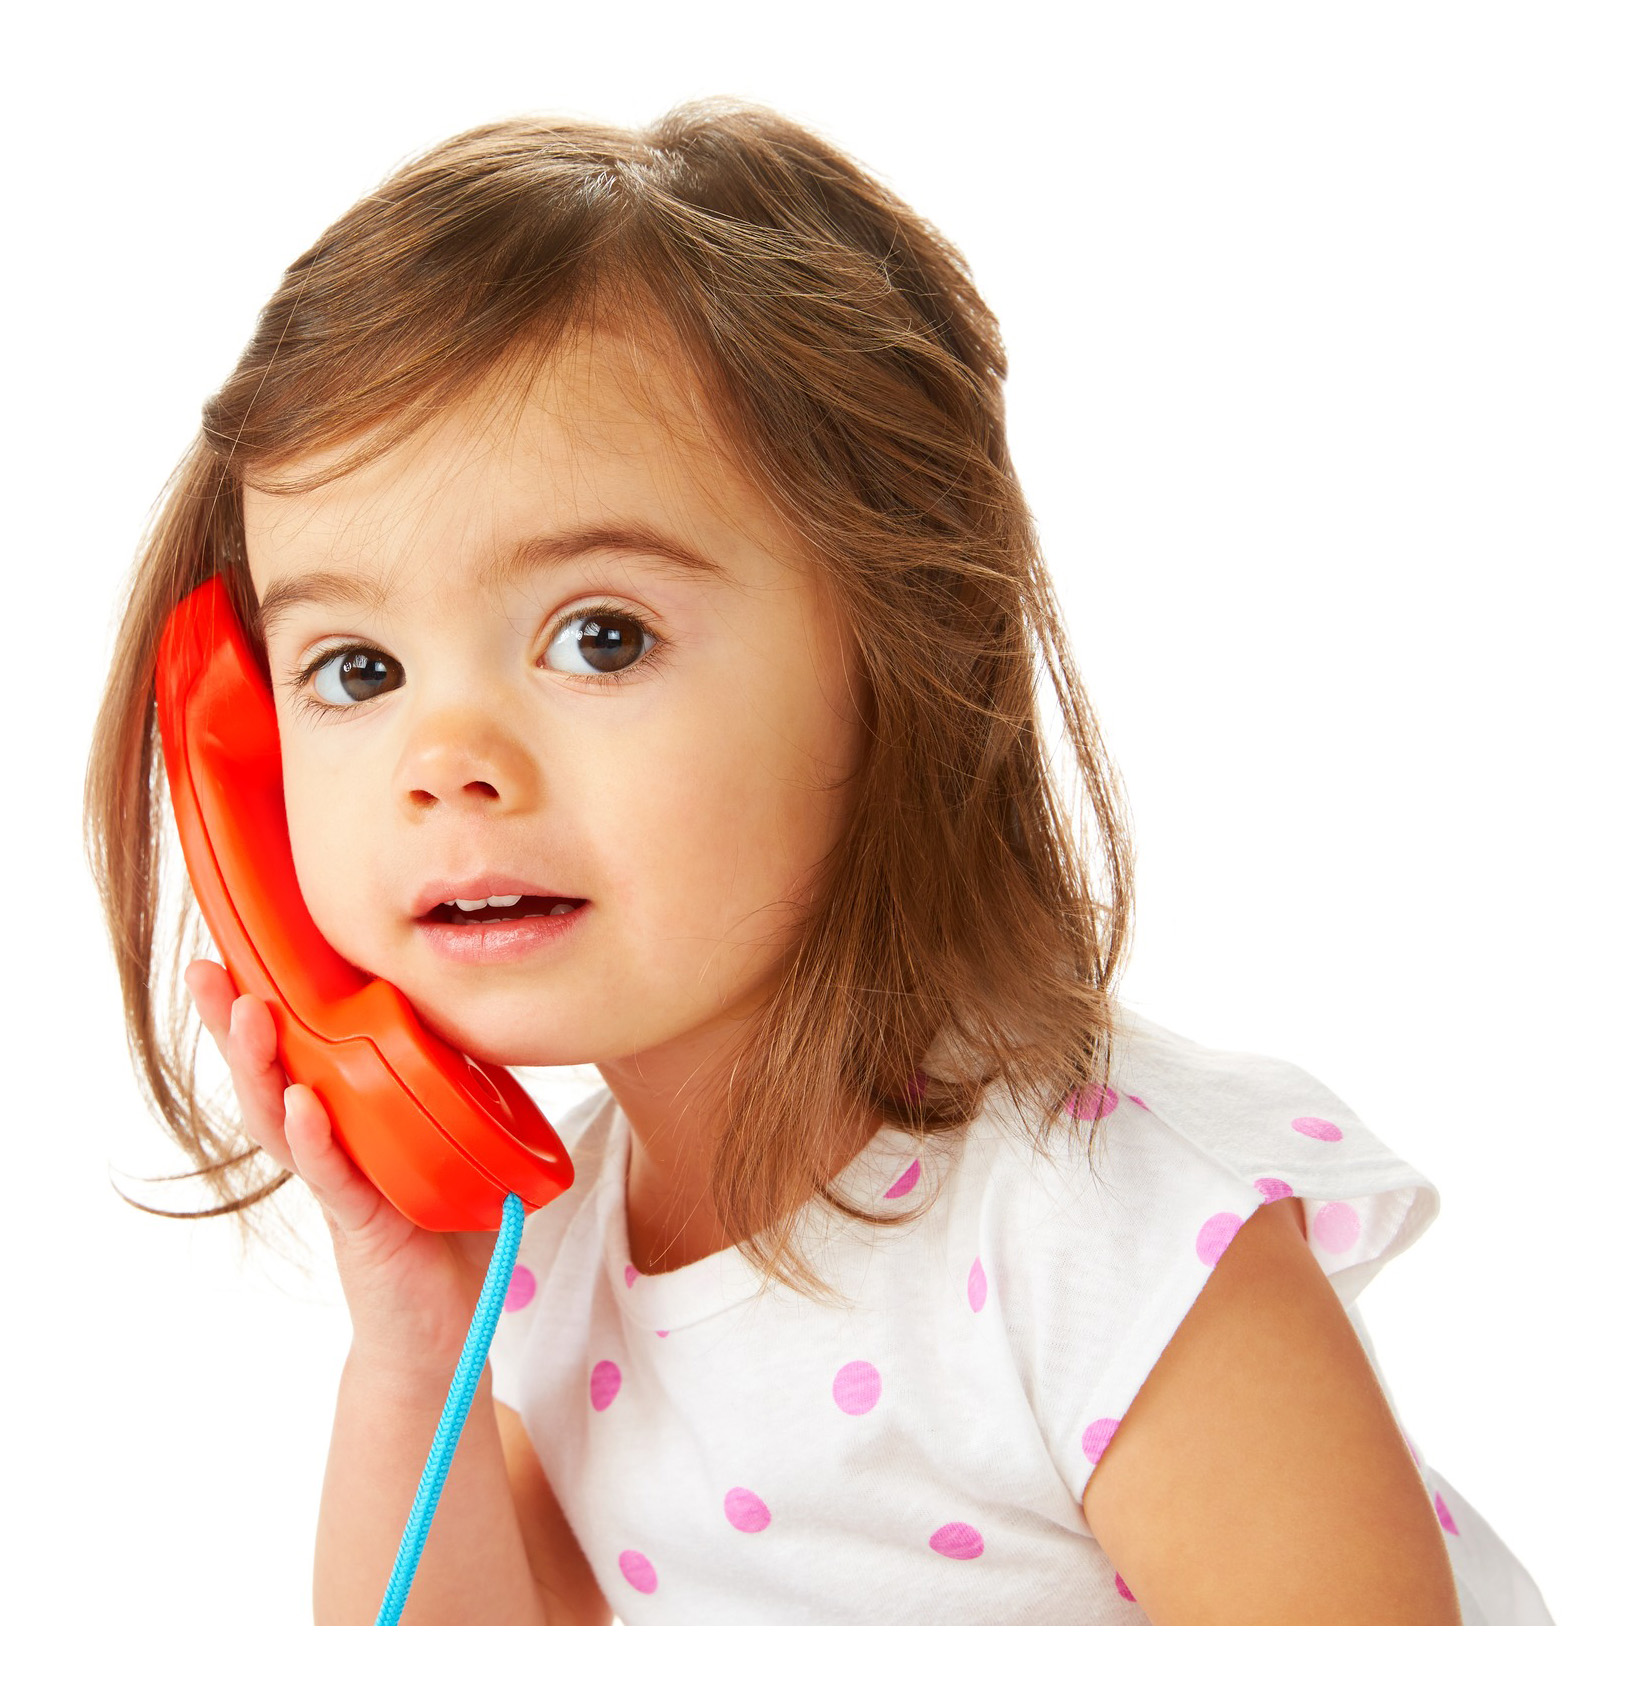 Программа говорят дети. Ребенок говорит. Девочка разговаривает по телефону. Ребенок говорит по телефону. Разговор с ребенком.